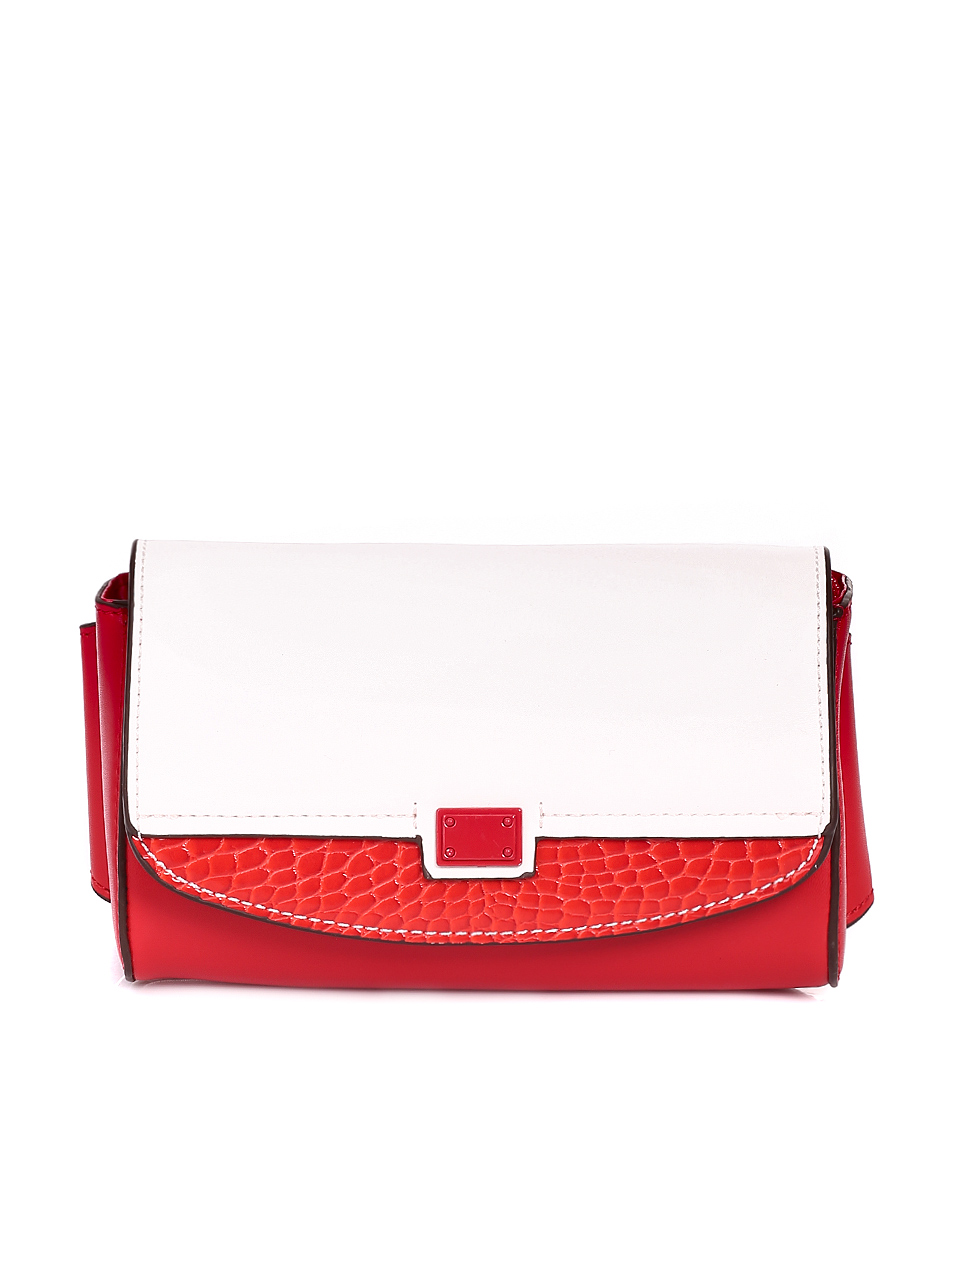 Eжедневна дамска чанта за кръста в червено 9Q-20433 red